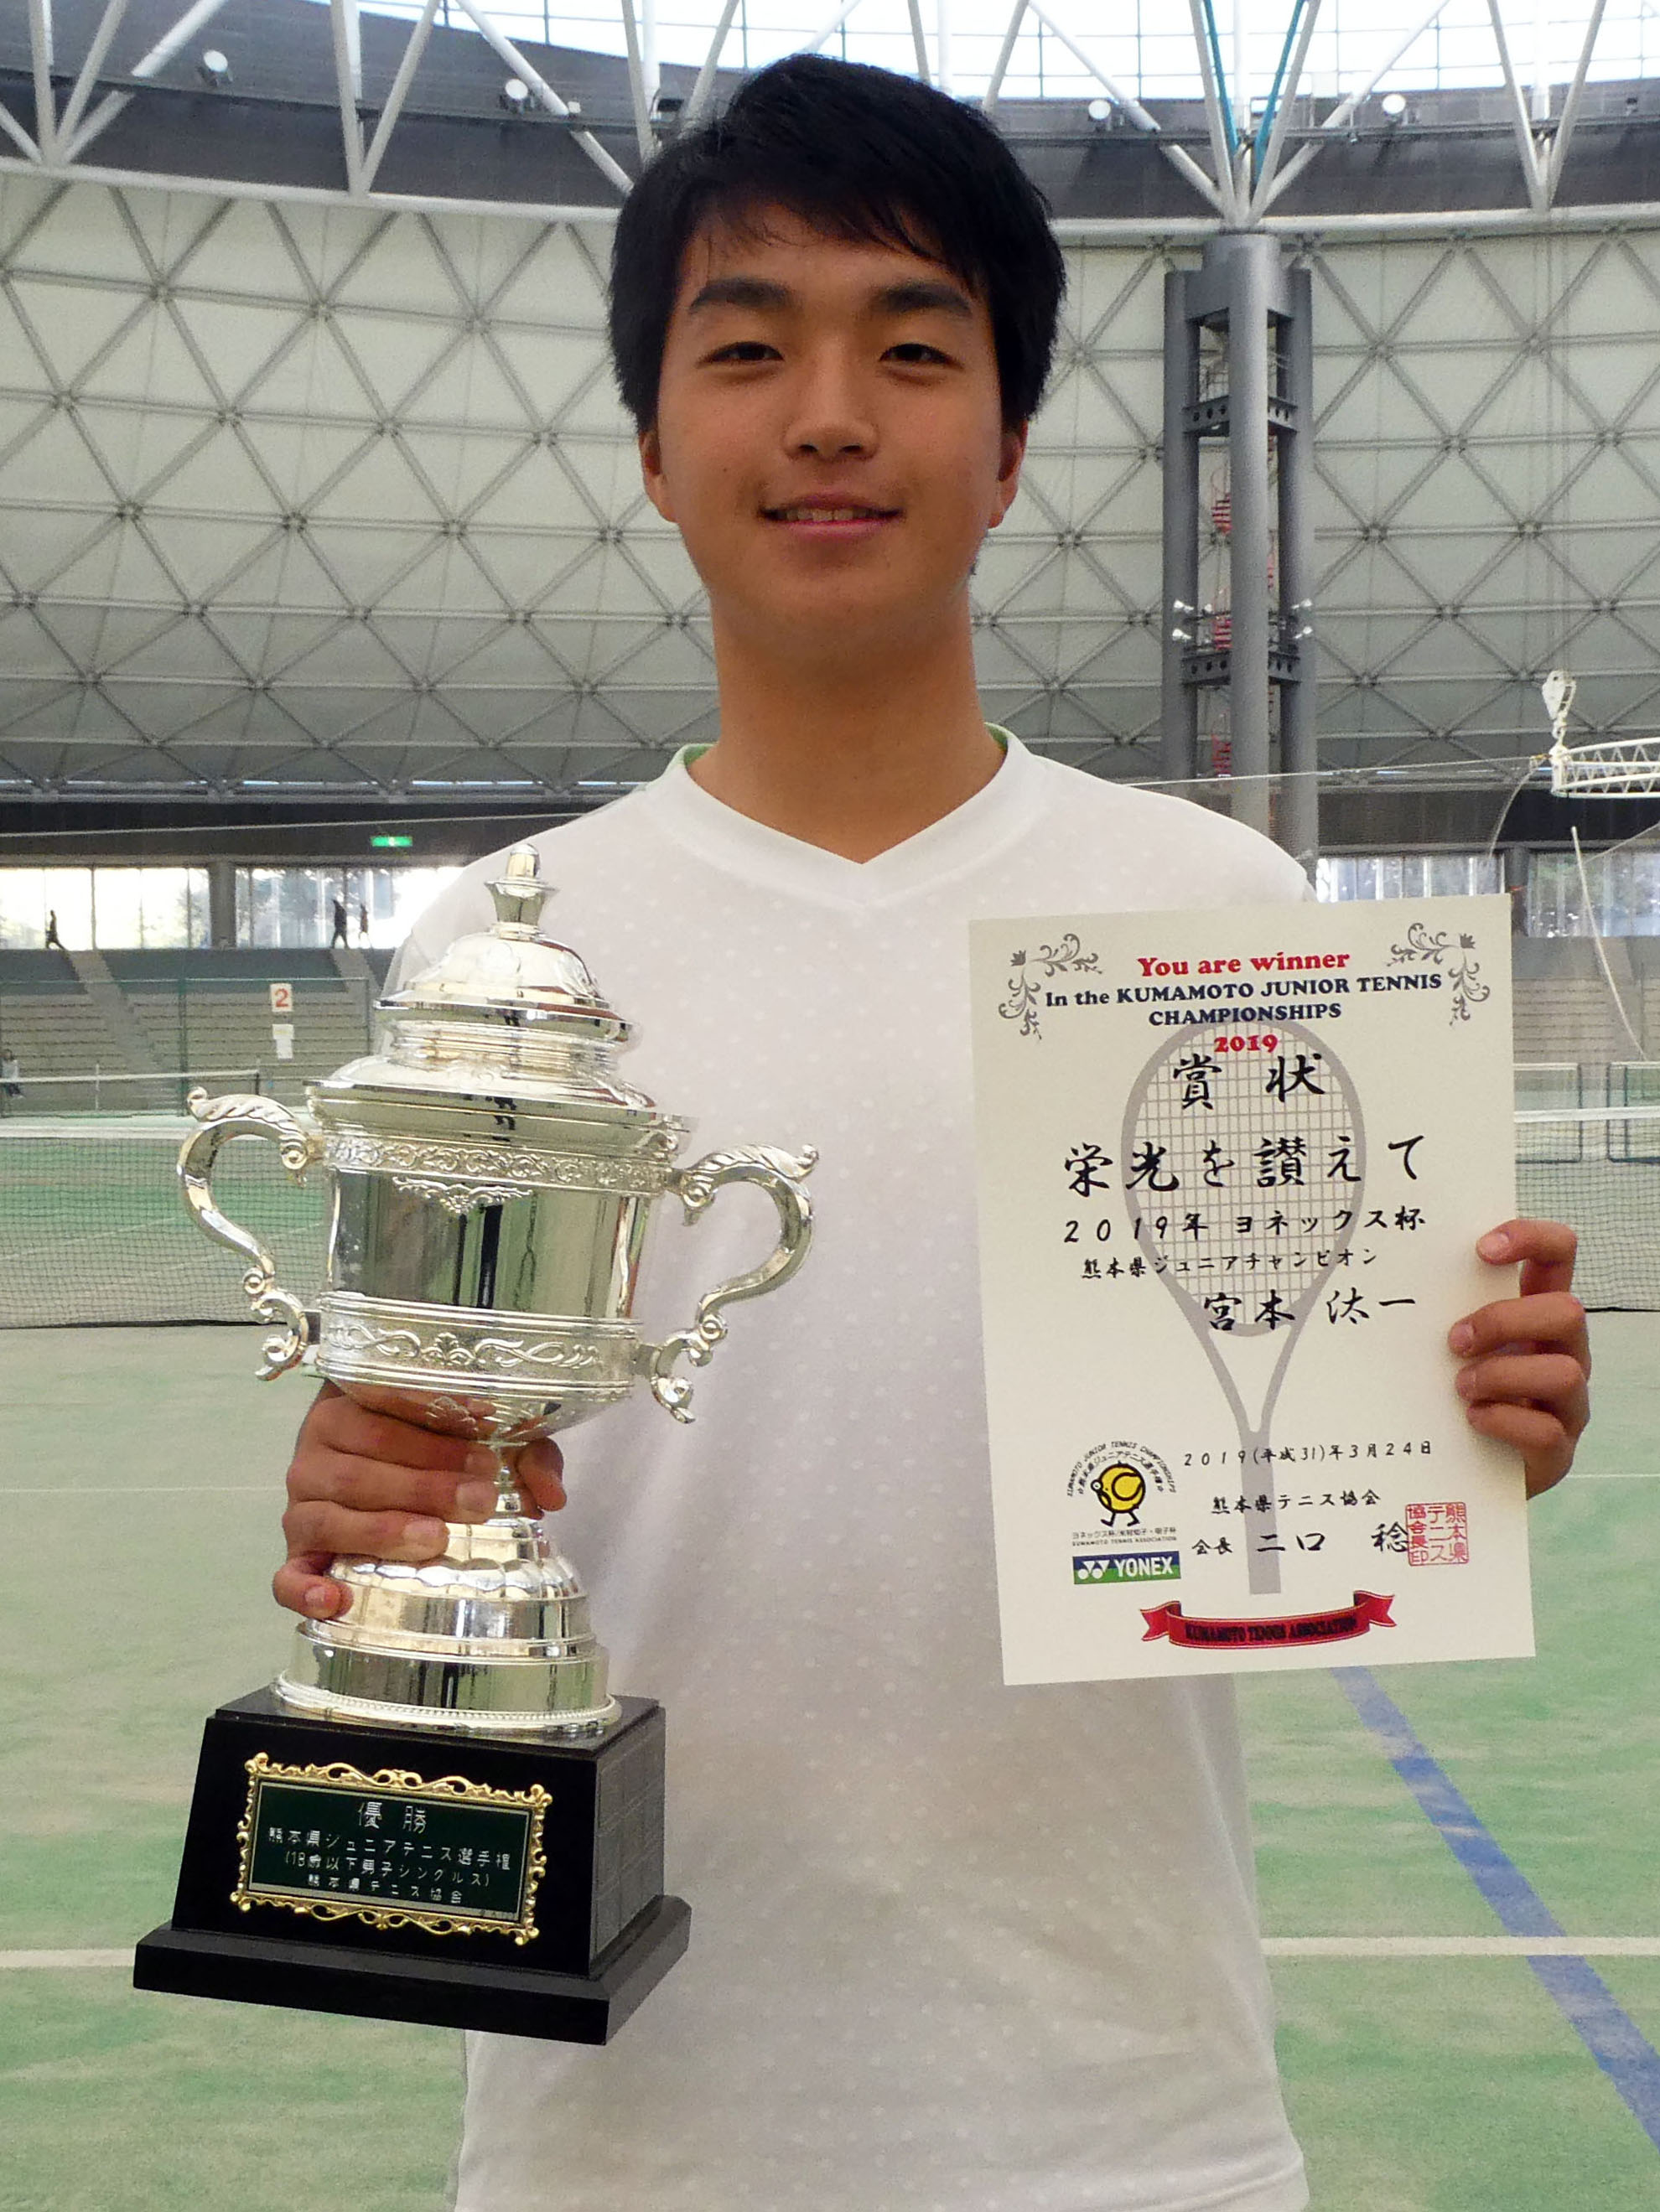 熊本 県 テニス 協会